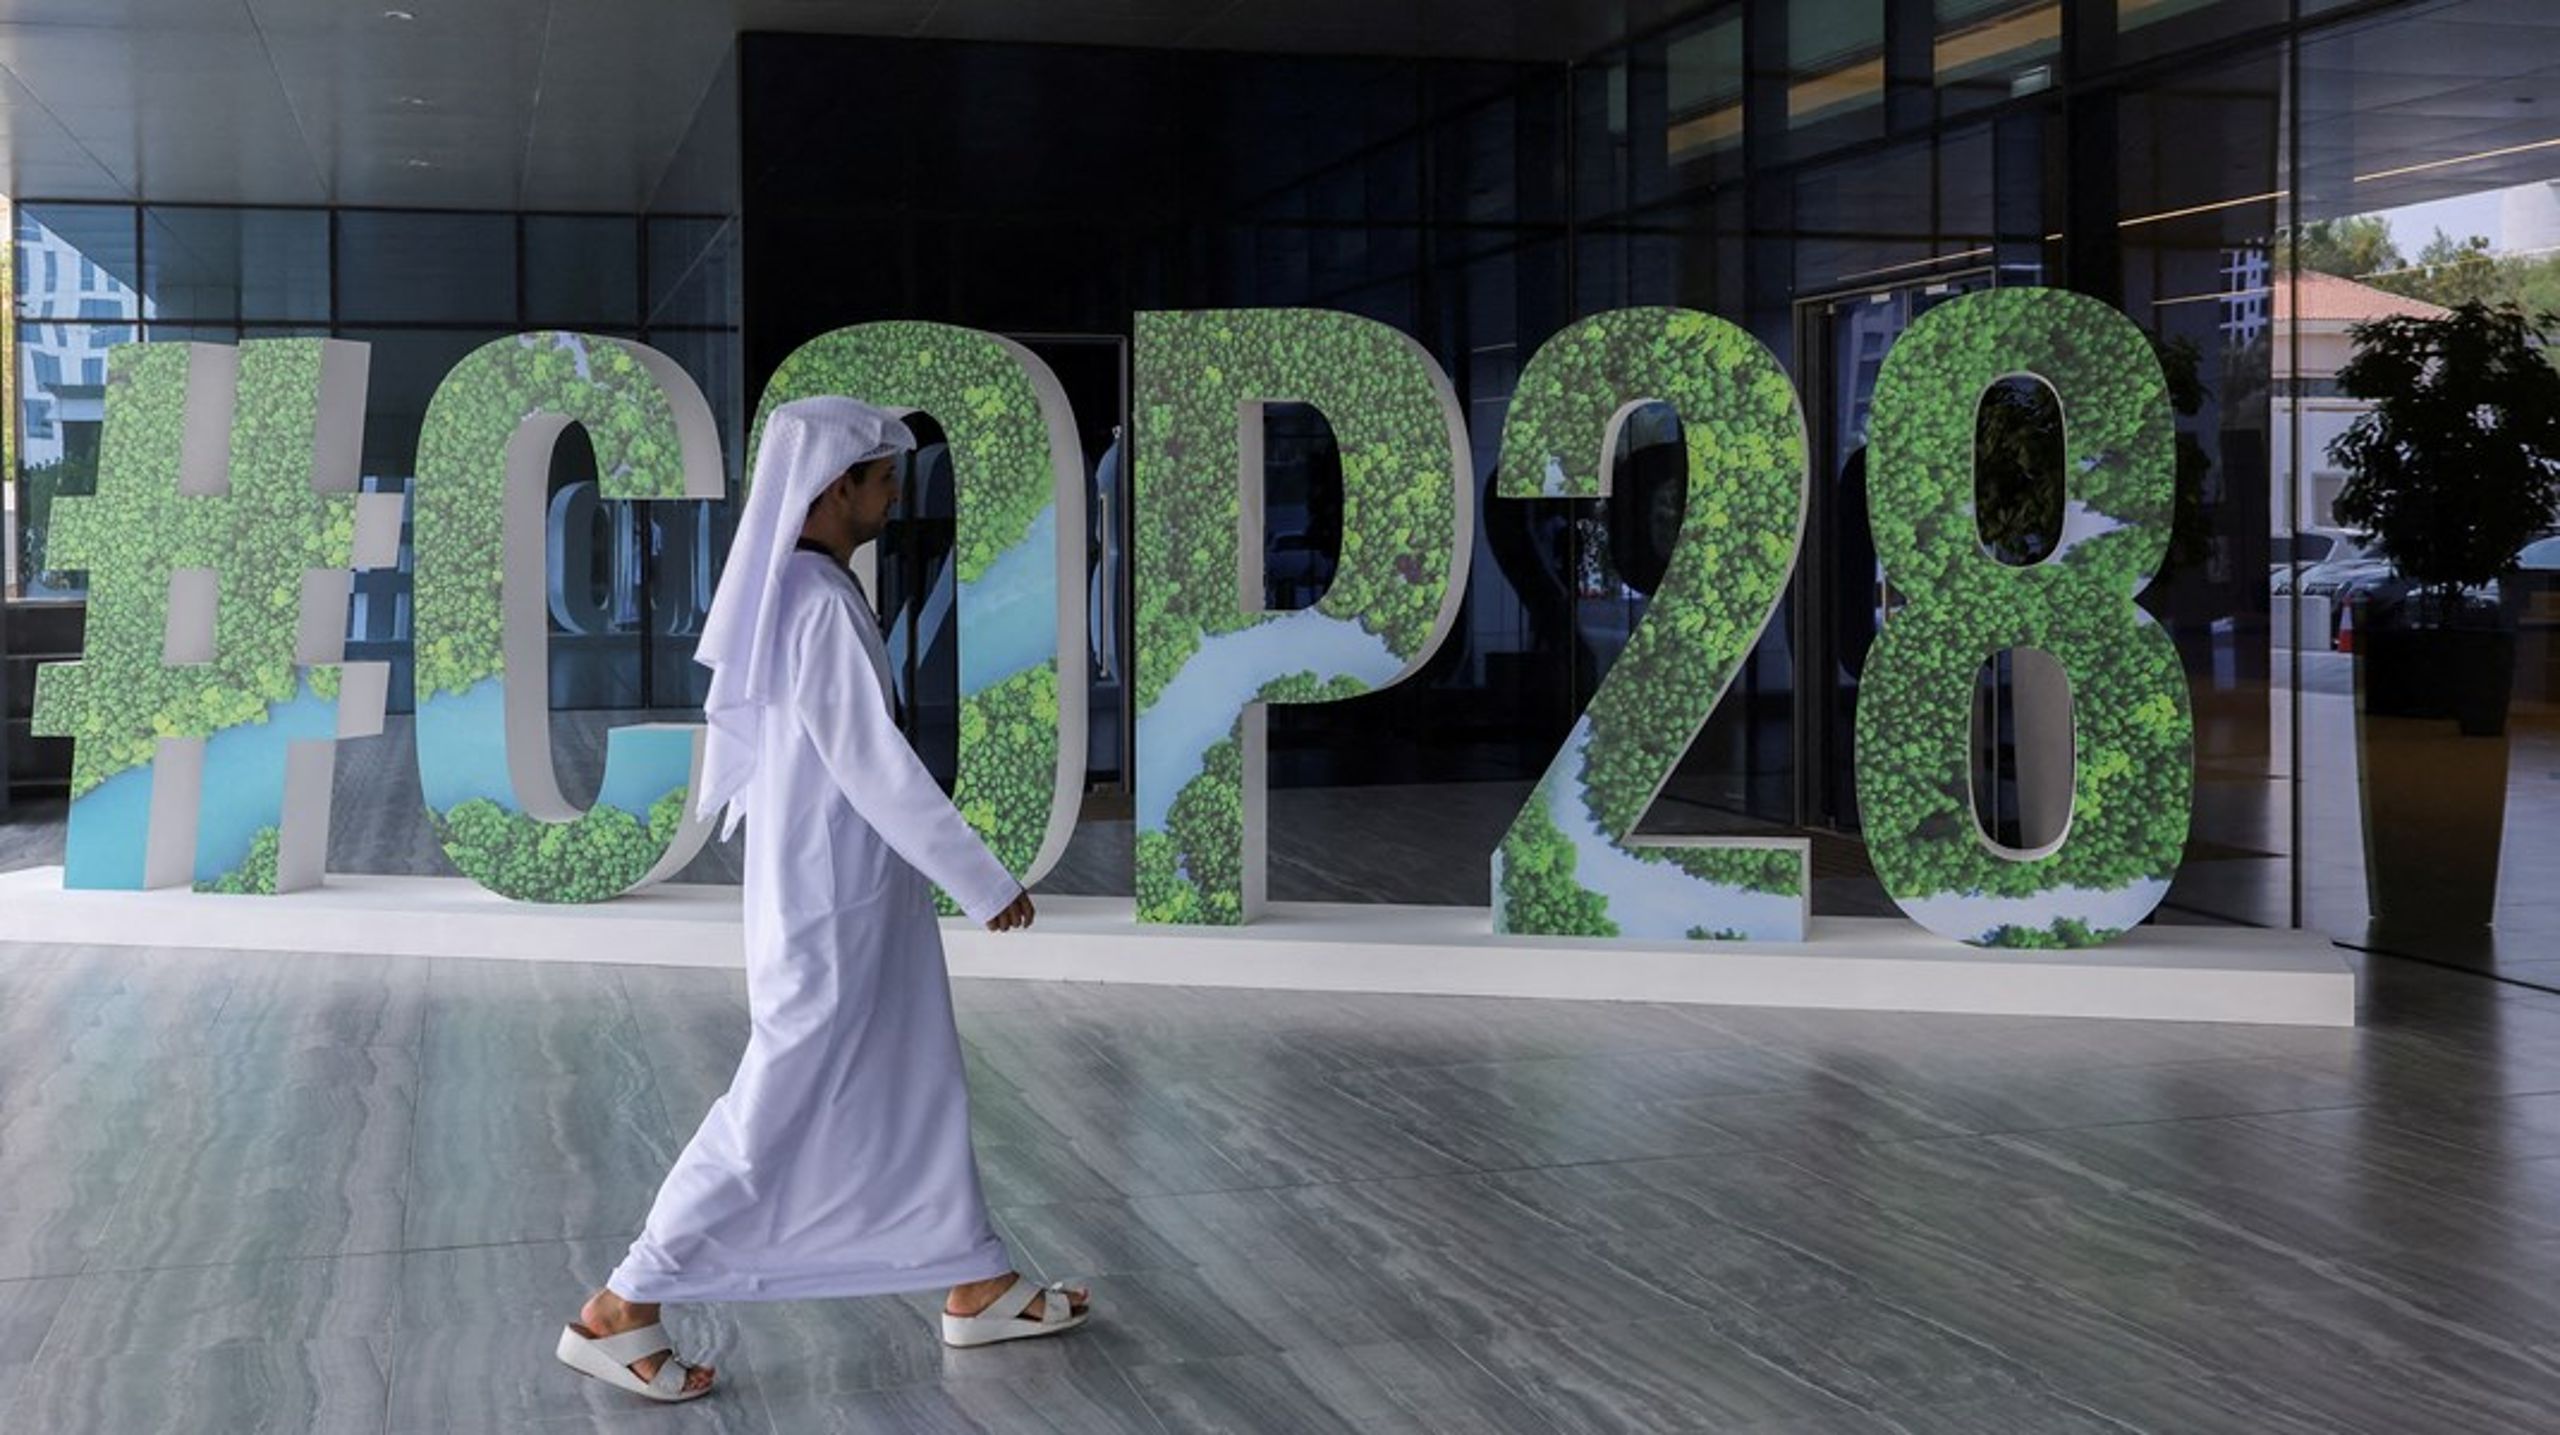 Når verdens lande 30. november mødes i de Forenede Arabiske Emirater til årets klimatopmøde, skal de forsøge at lande en aftale om fonden for tab og skader. Allerede nu ligger der en kompromistekst klar. Men det er ikke sikkert, den bliver vedtaget.&nbsp;<div></div>